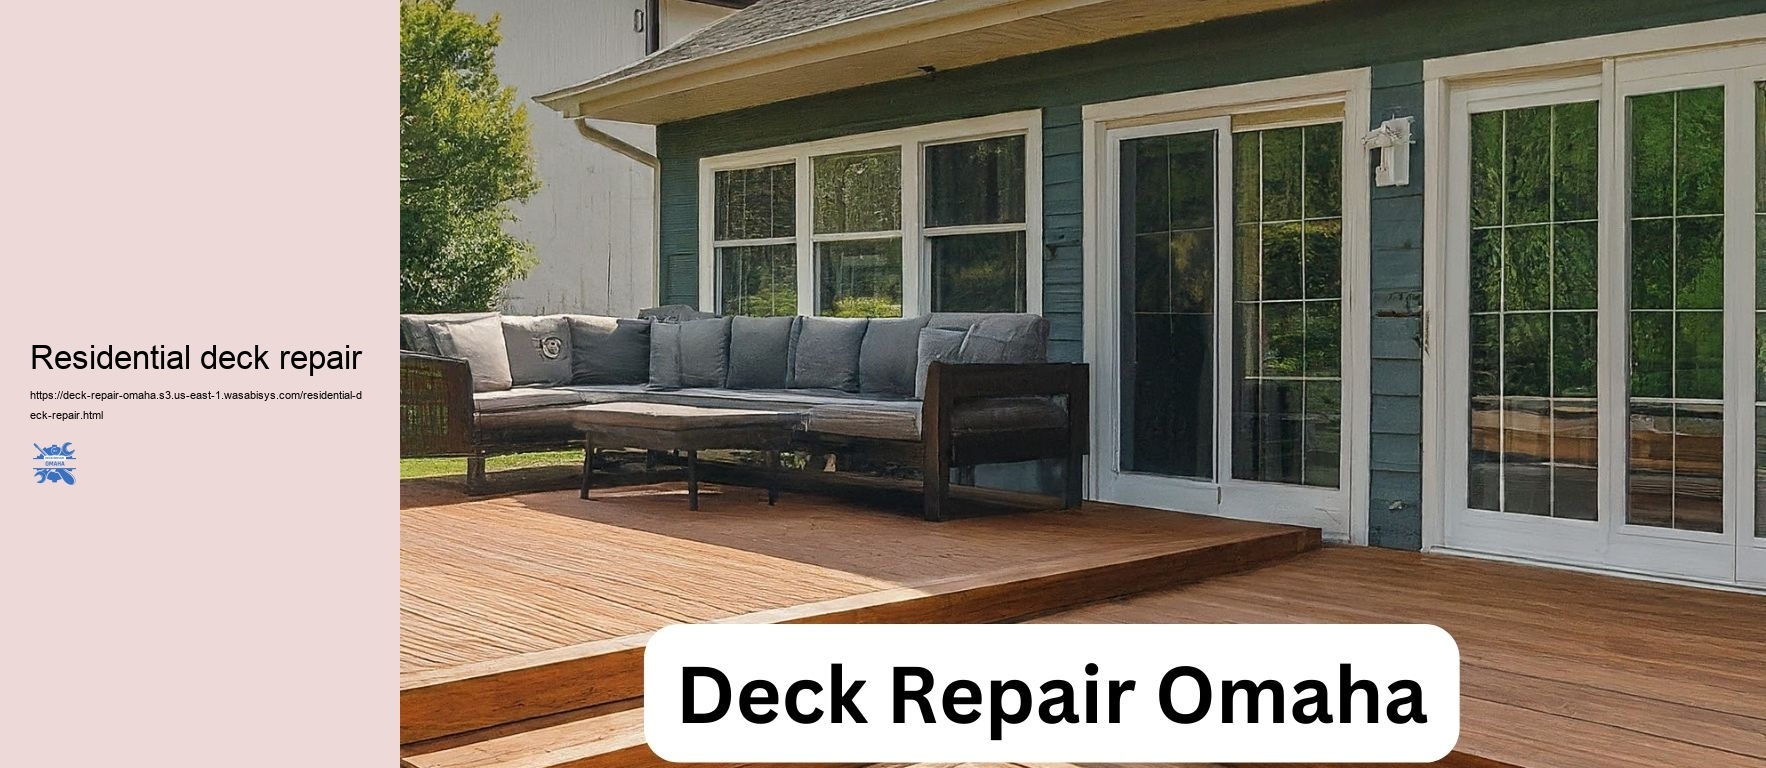 Residential deck repair